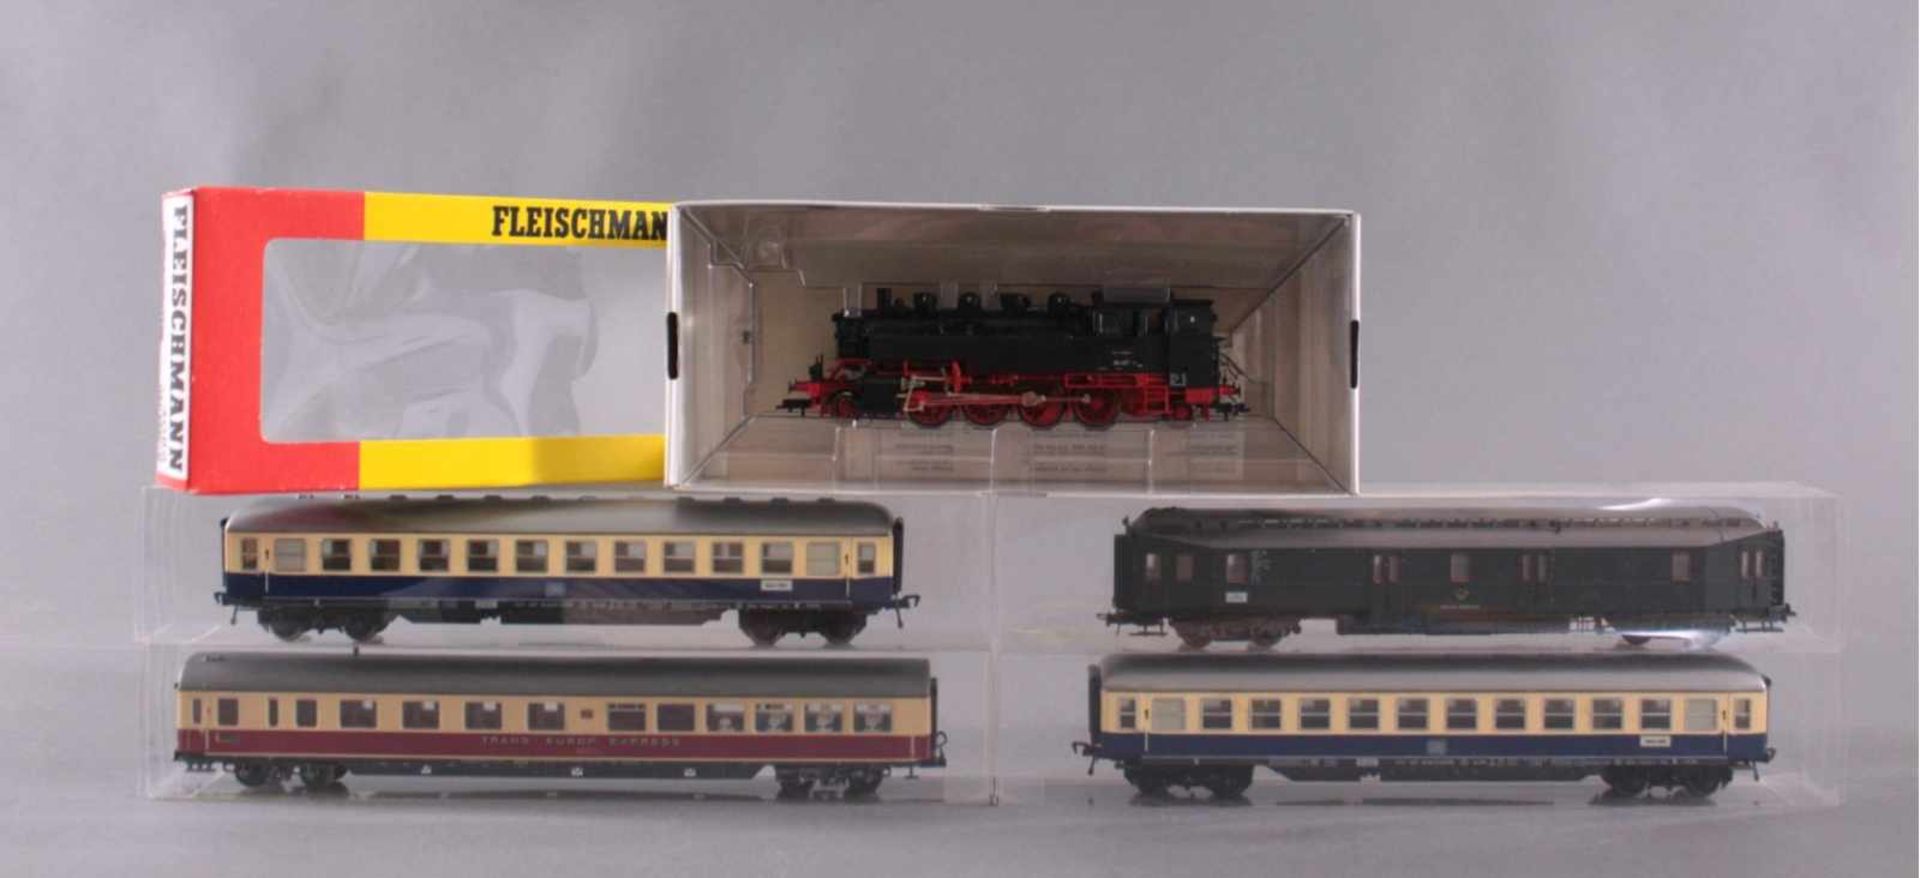 Fleischmann Dampflok 4086 Spur H0 und 9 Waggons4 Personenwaggons davon ein Waggon aus der Flotte des